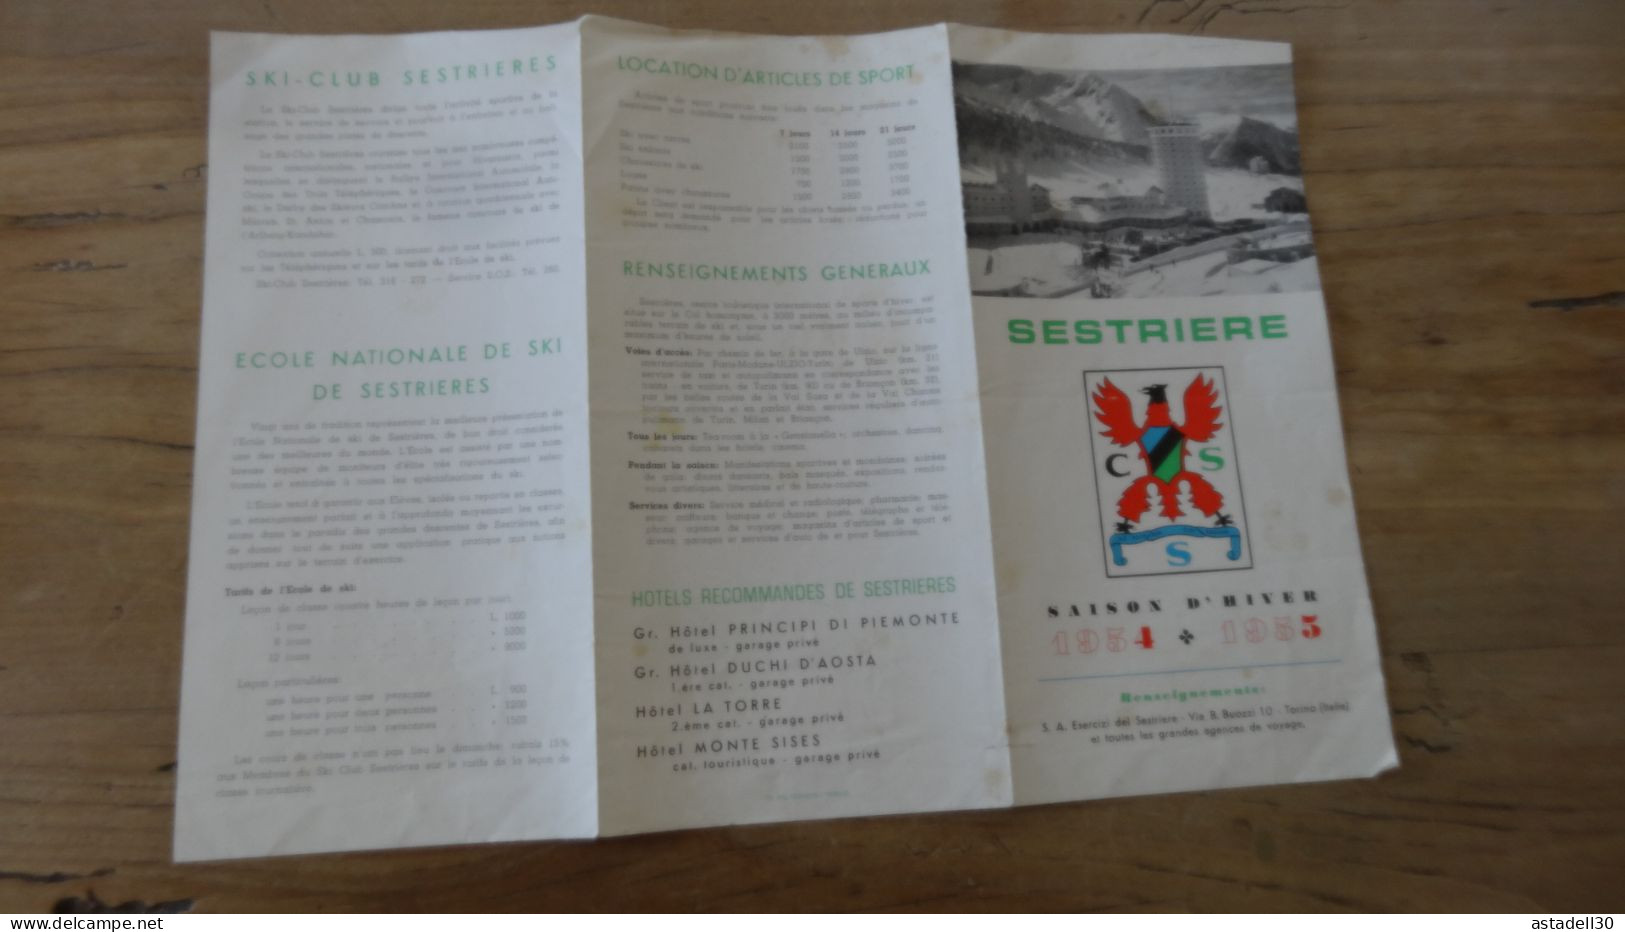 Dépliant Saison D'hiver 1954-1955, SESTRIERE  ................ Caisse-27 - Tourism Brochures